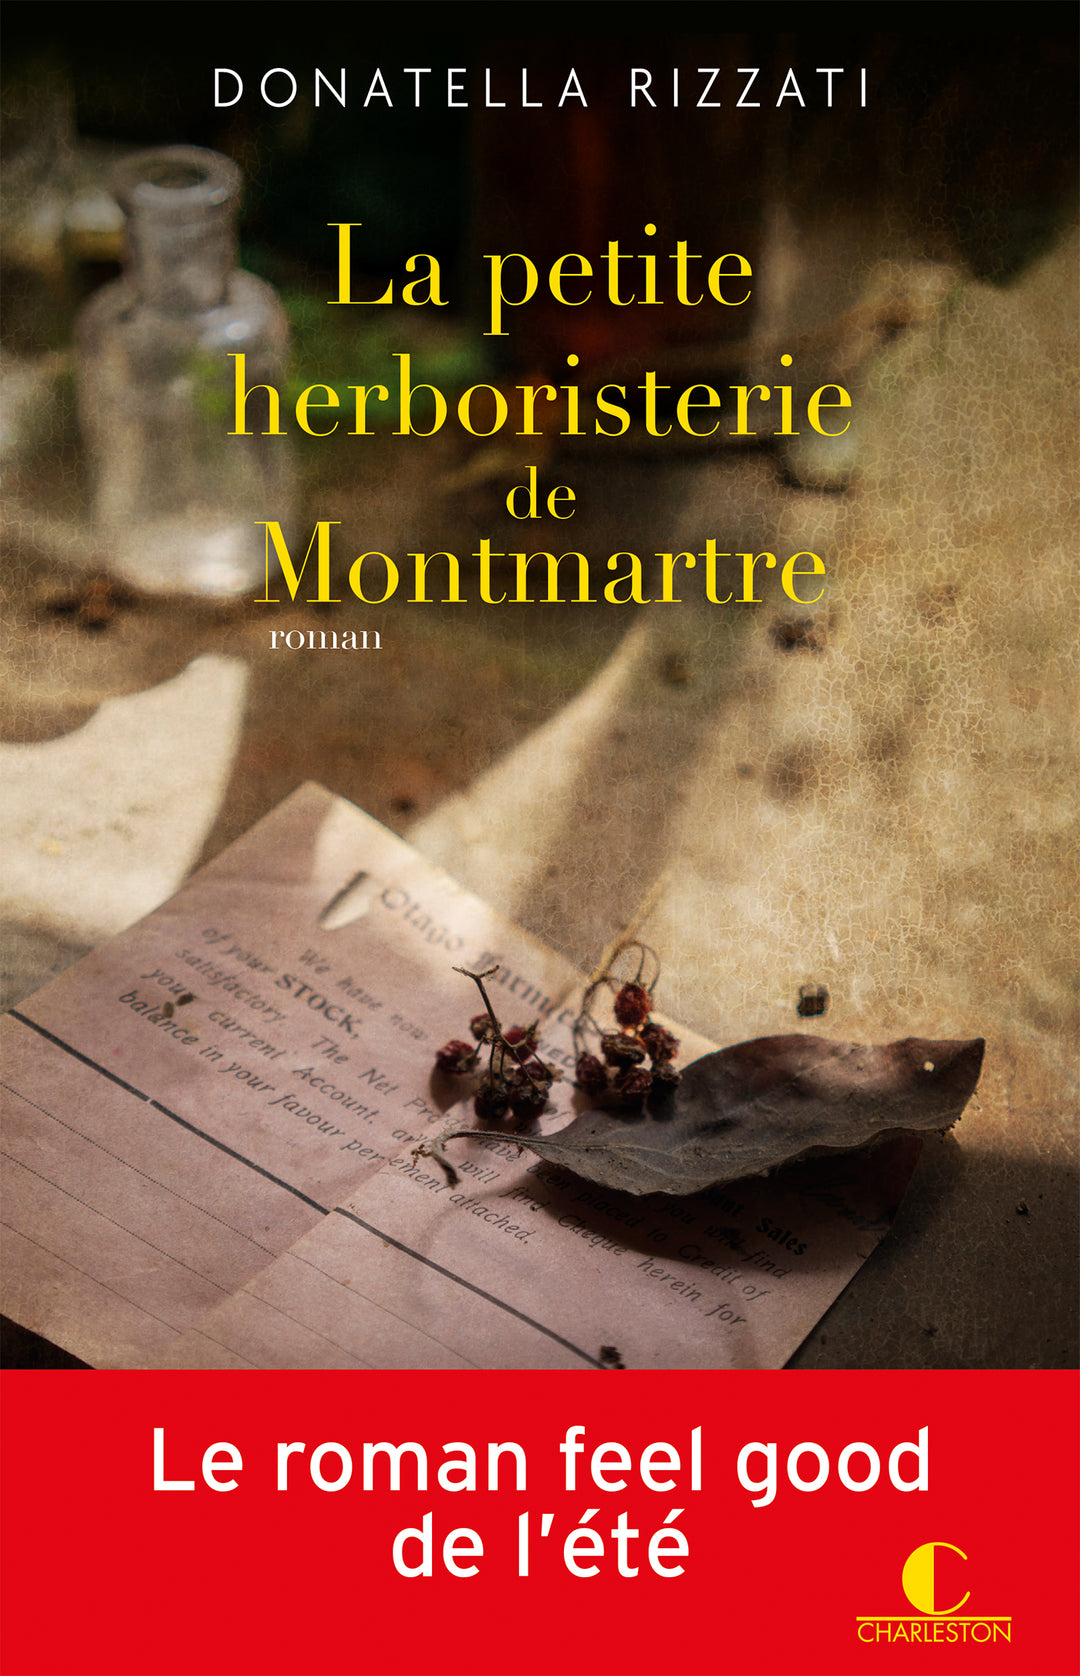 La petite herboristerie de Montmartre, par les Lectrices Charleston